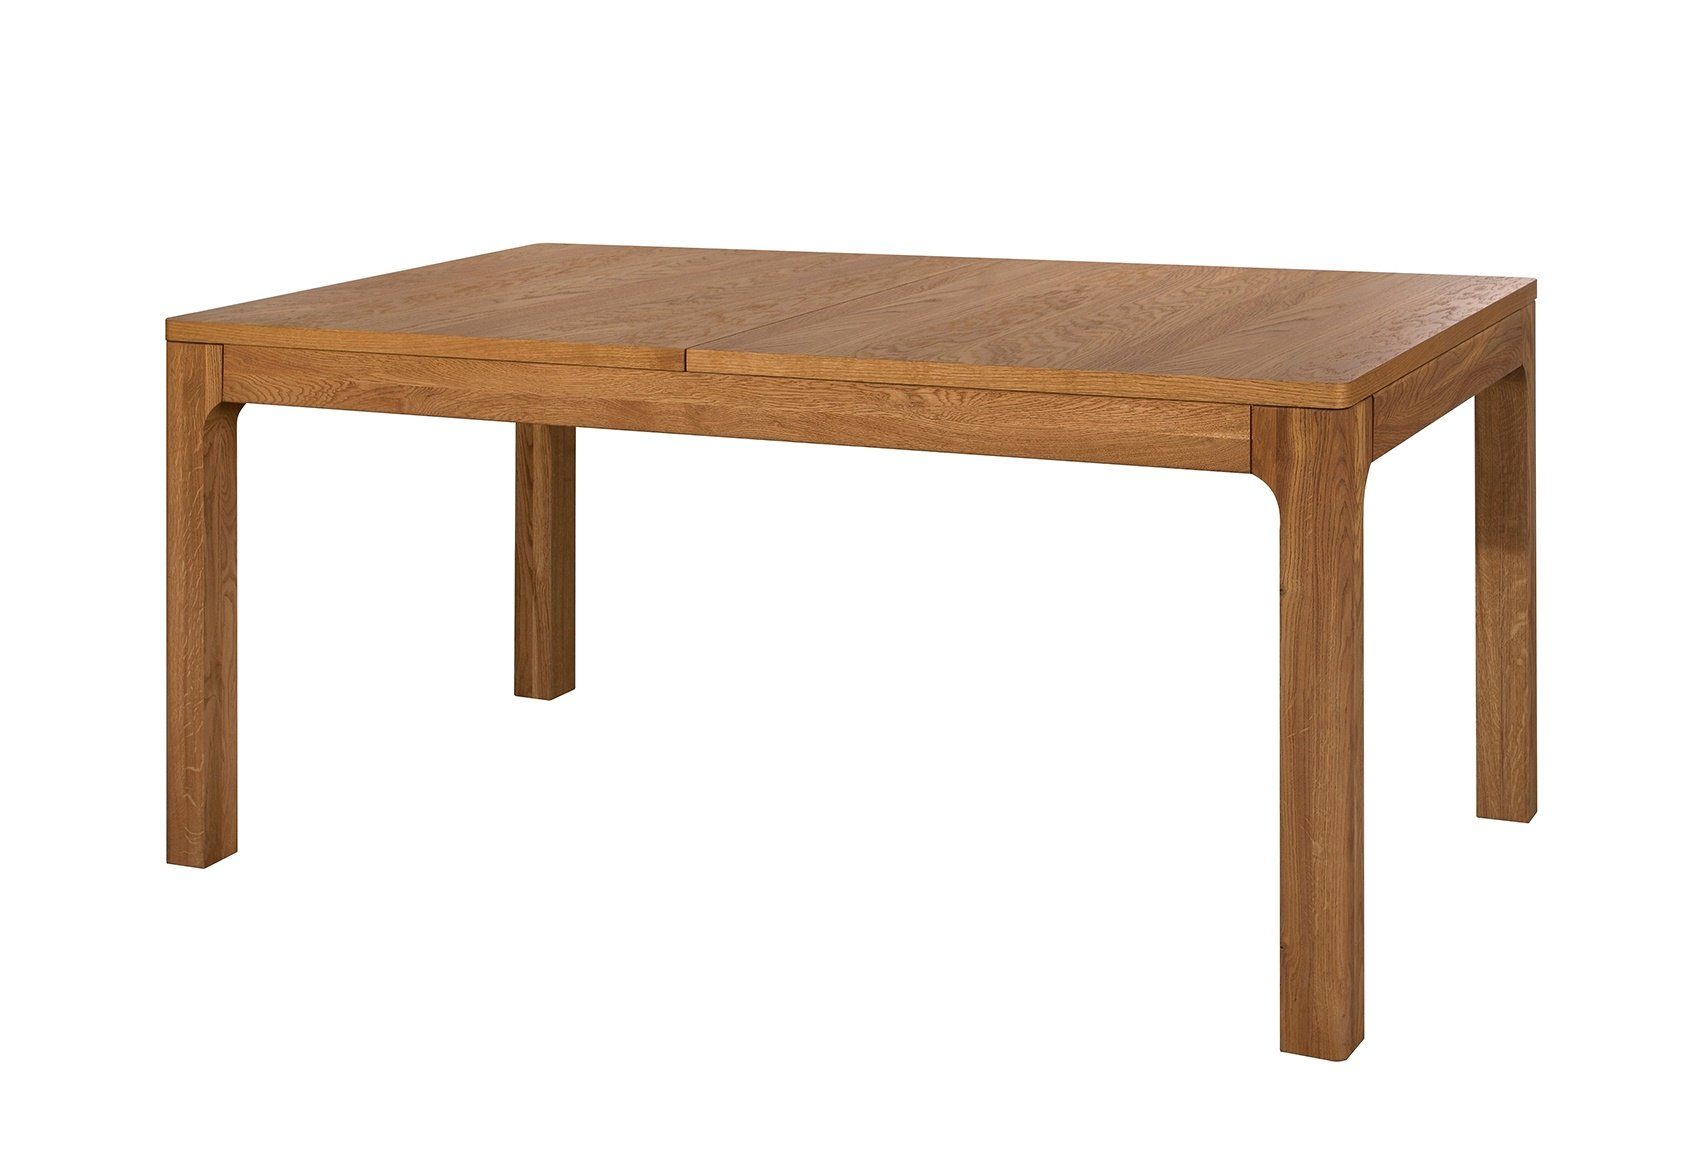 Stylefy Esstisch Laura Massivholz Honig Eiche (Esstisch, Tisch), aus Massivholz, ausziehbar, rechteckig, Skandinavisch Design